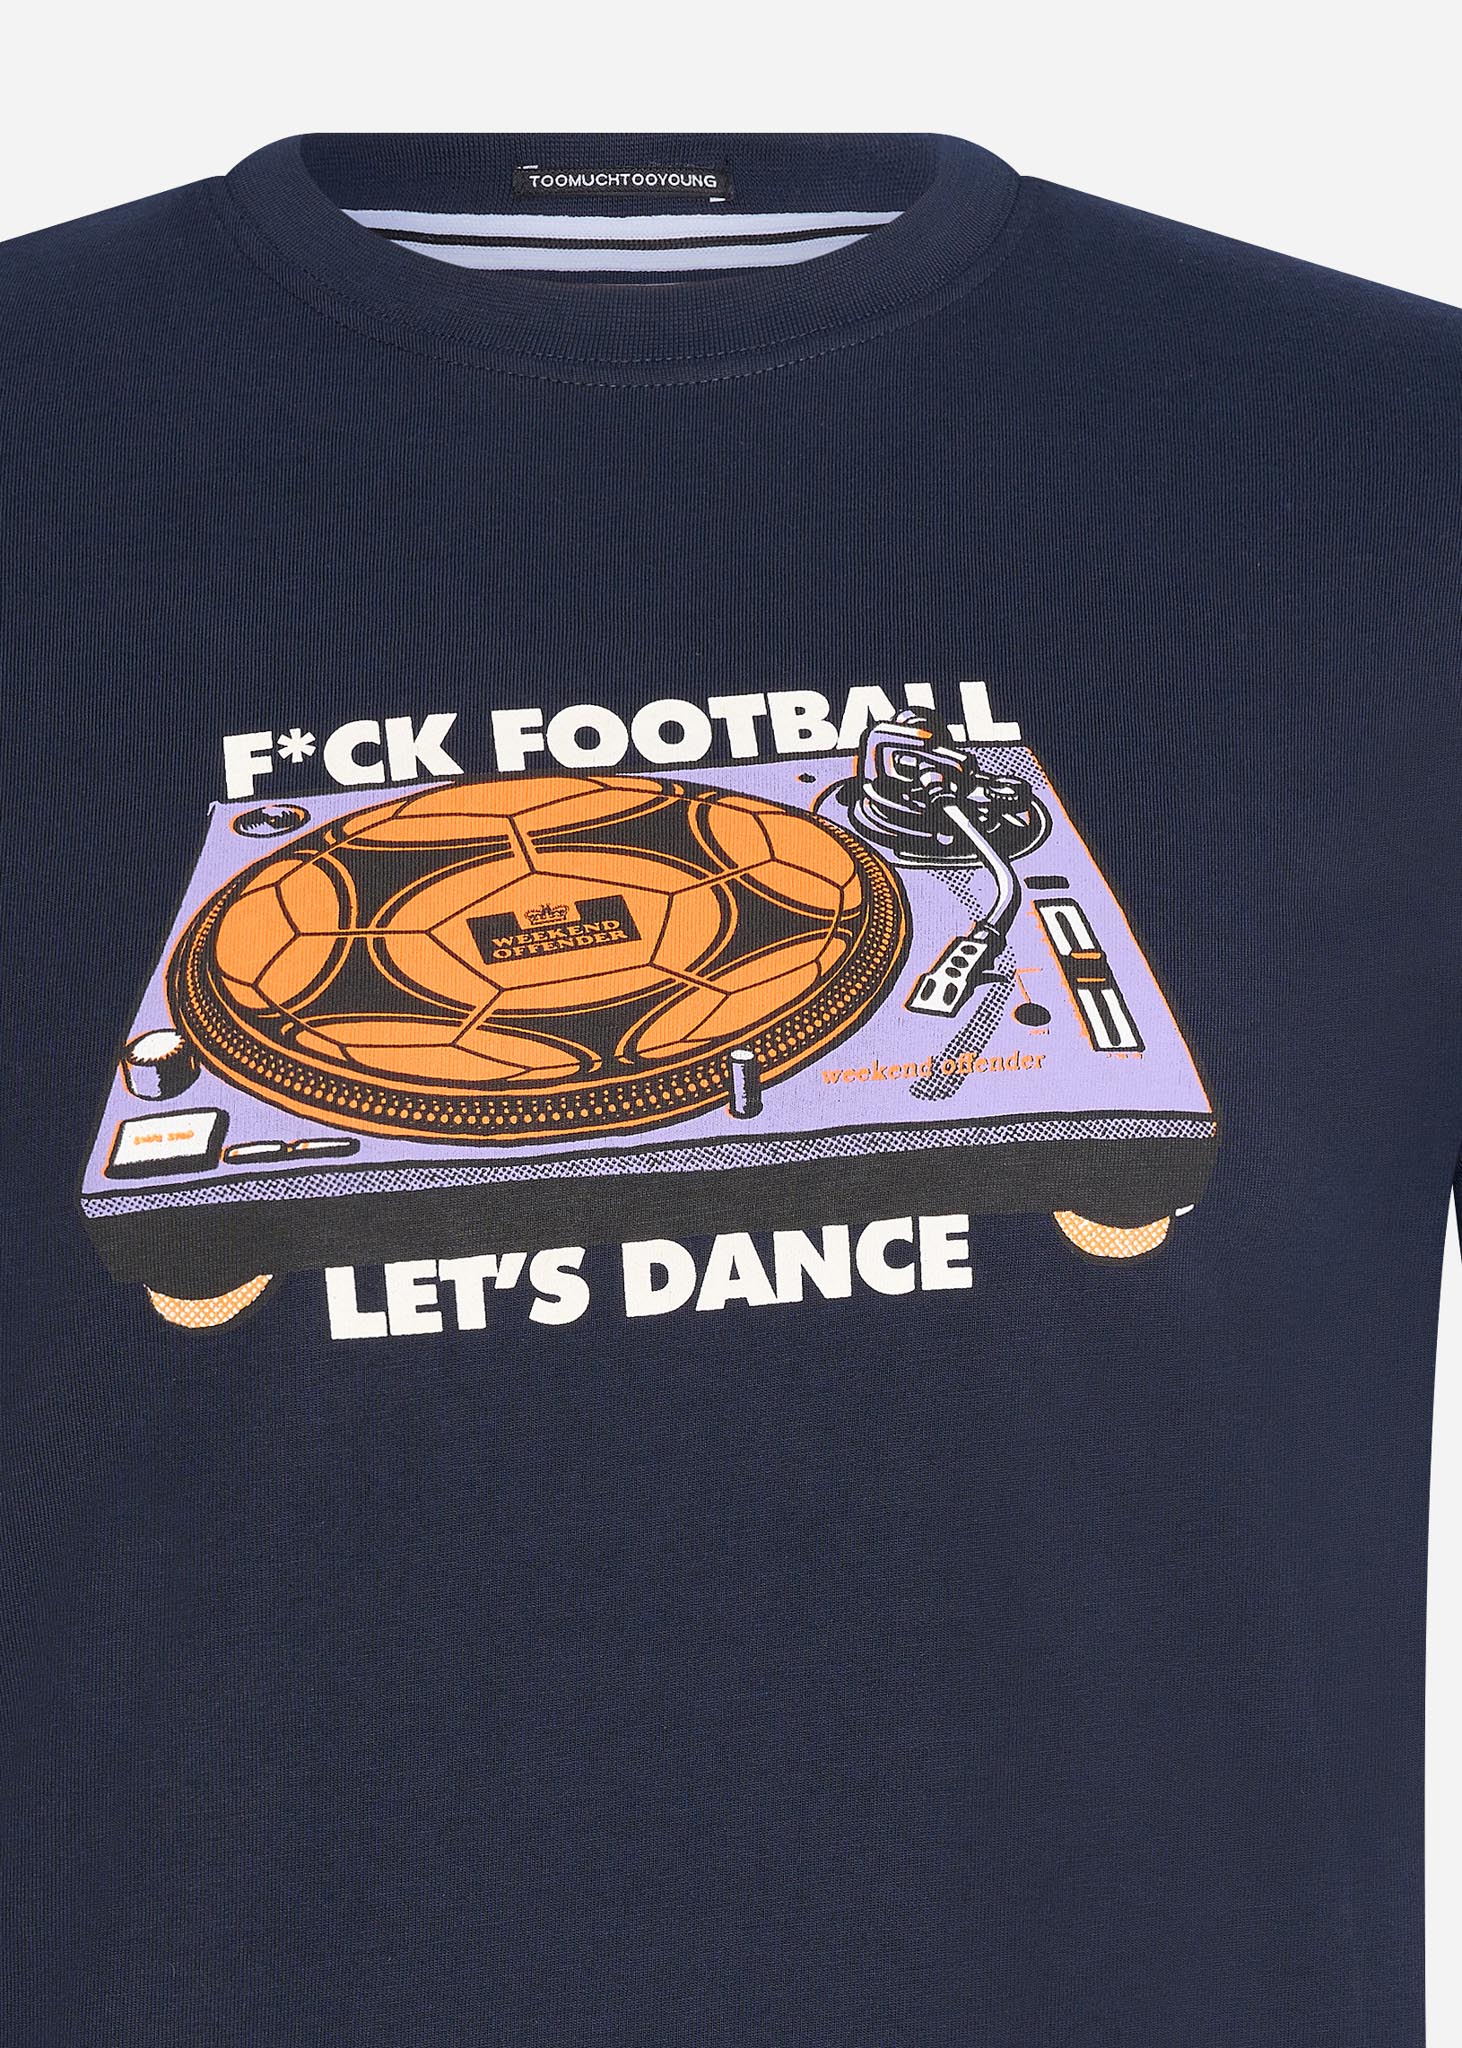 weeekend offender t-shirt lets dance